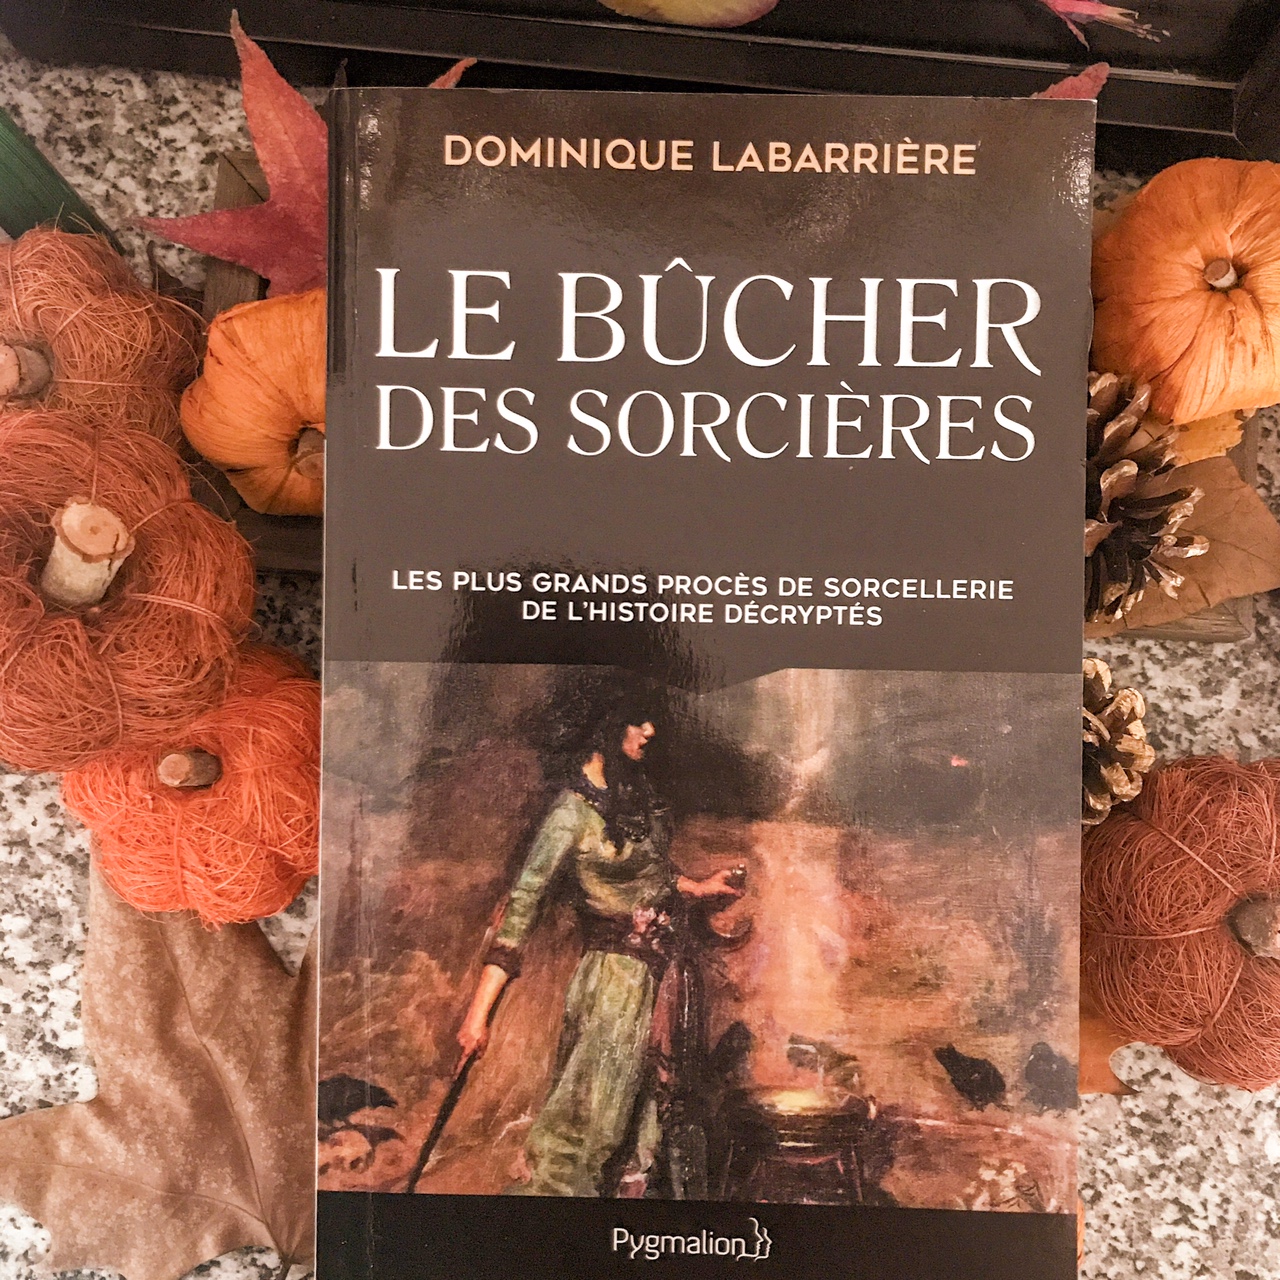 Le bûcher des sorcières, de Dominique Labarrière : les plus grands procès de sorcellerie de l'histoire décryptés